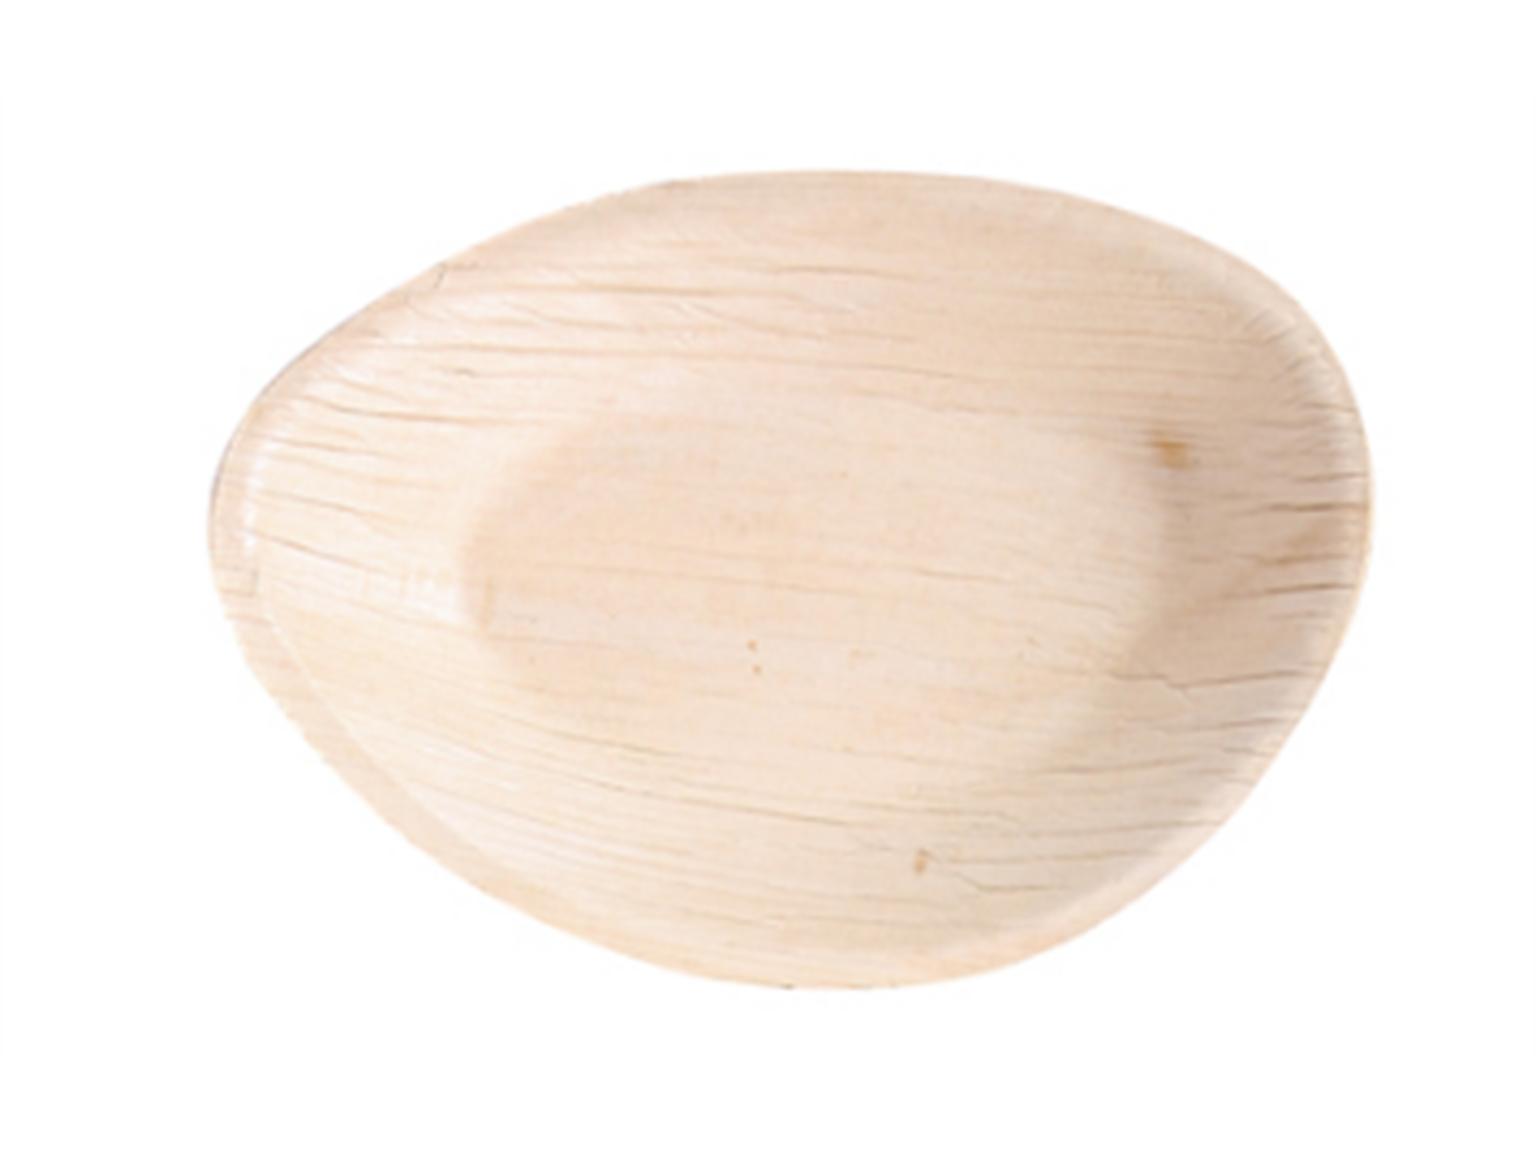 PLATTE PALMBLATT  oval, 26.5 x 16.5 x 2.6 cm